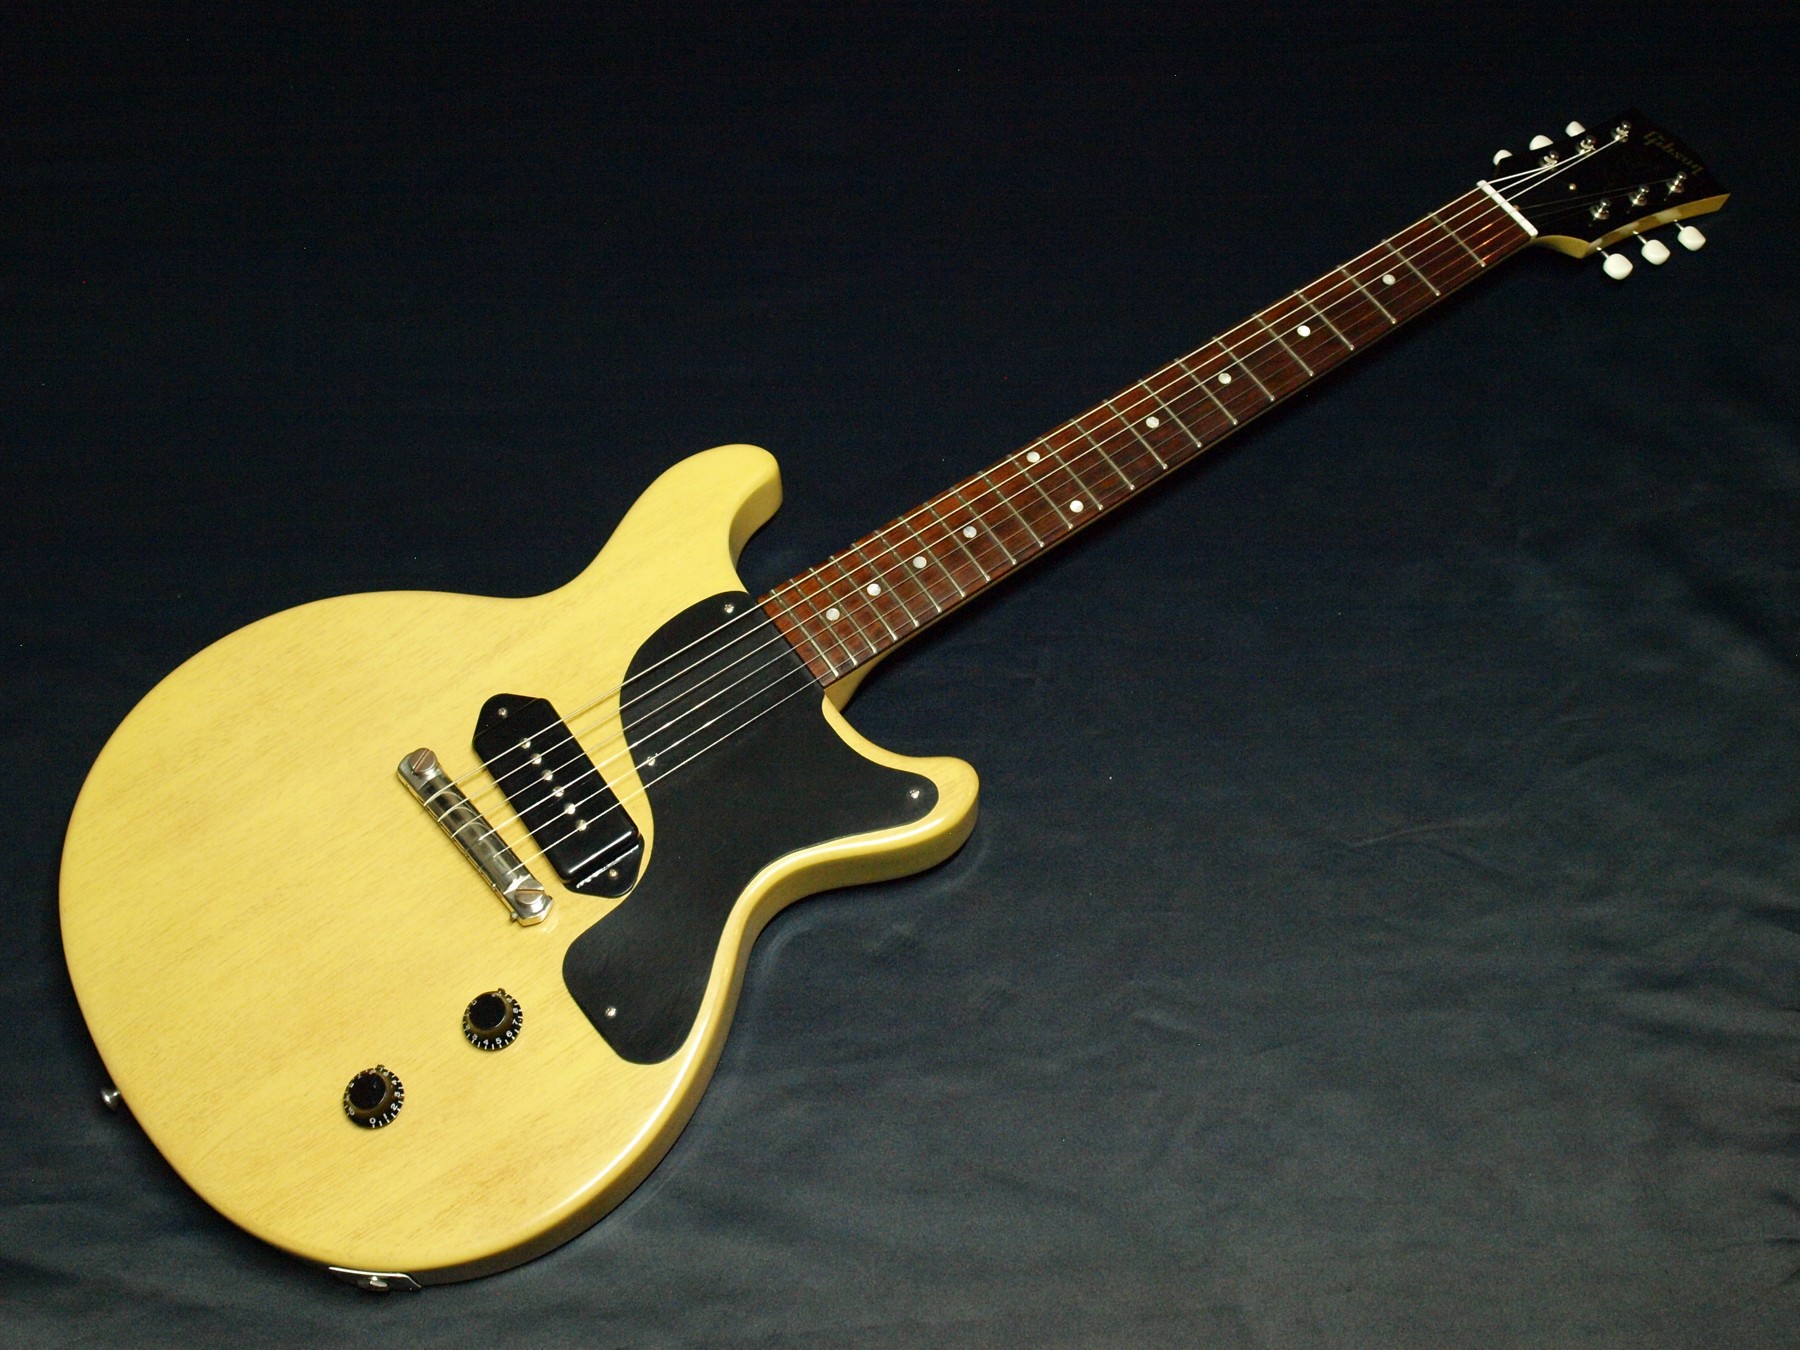 Gibson Custom Shop レスポールhistoric Collection 1958 Les Paul Jr Dc Vos Tv Yellow中古 売却済みです あしからずご了承ください Music Plant Webshop